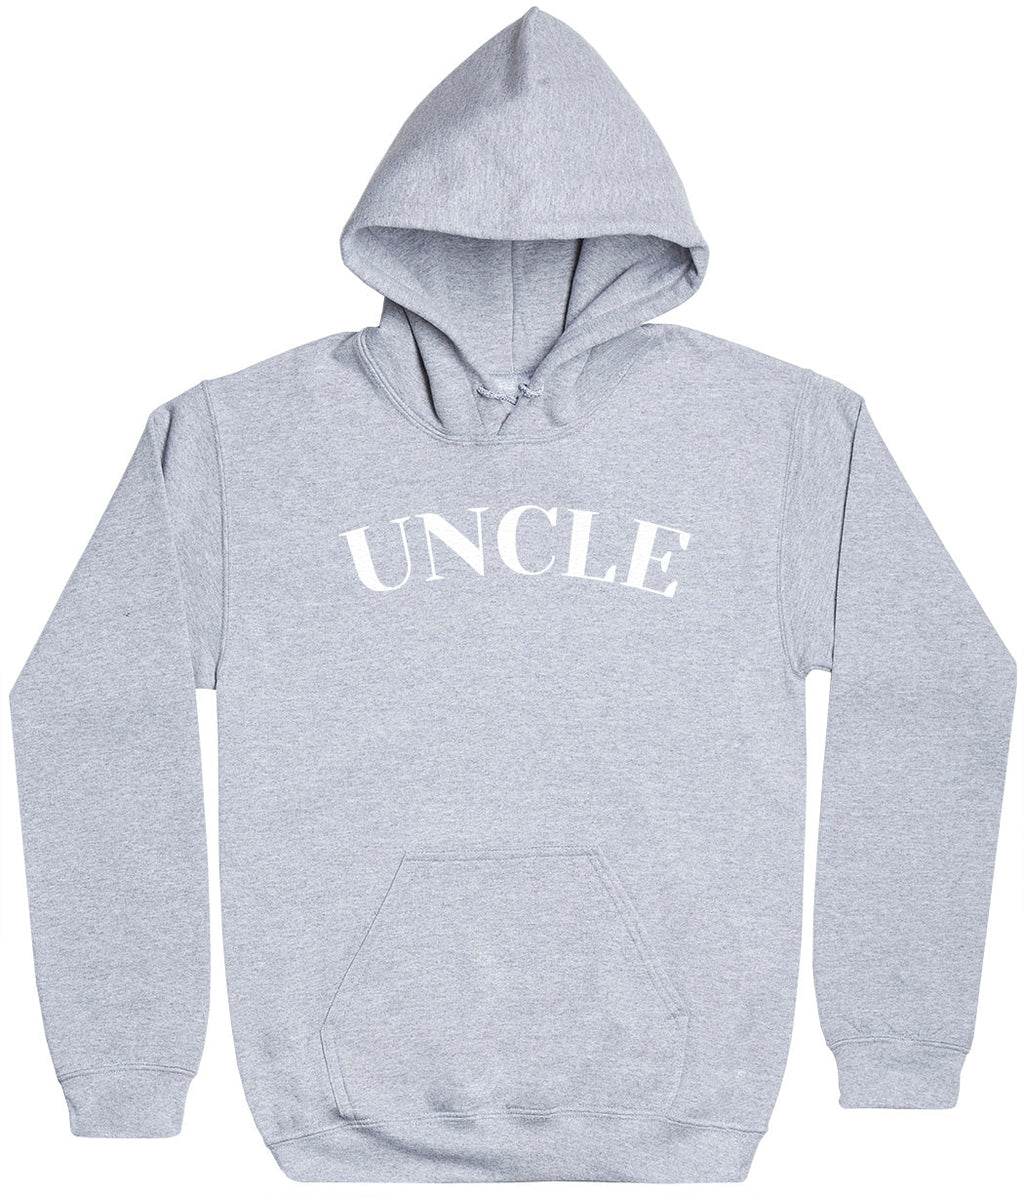 Uncle - White - Mens Hoodie (6574688763953)